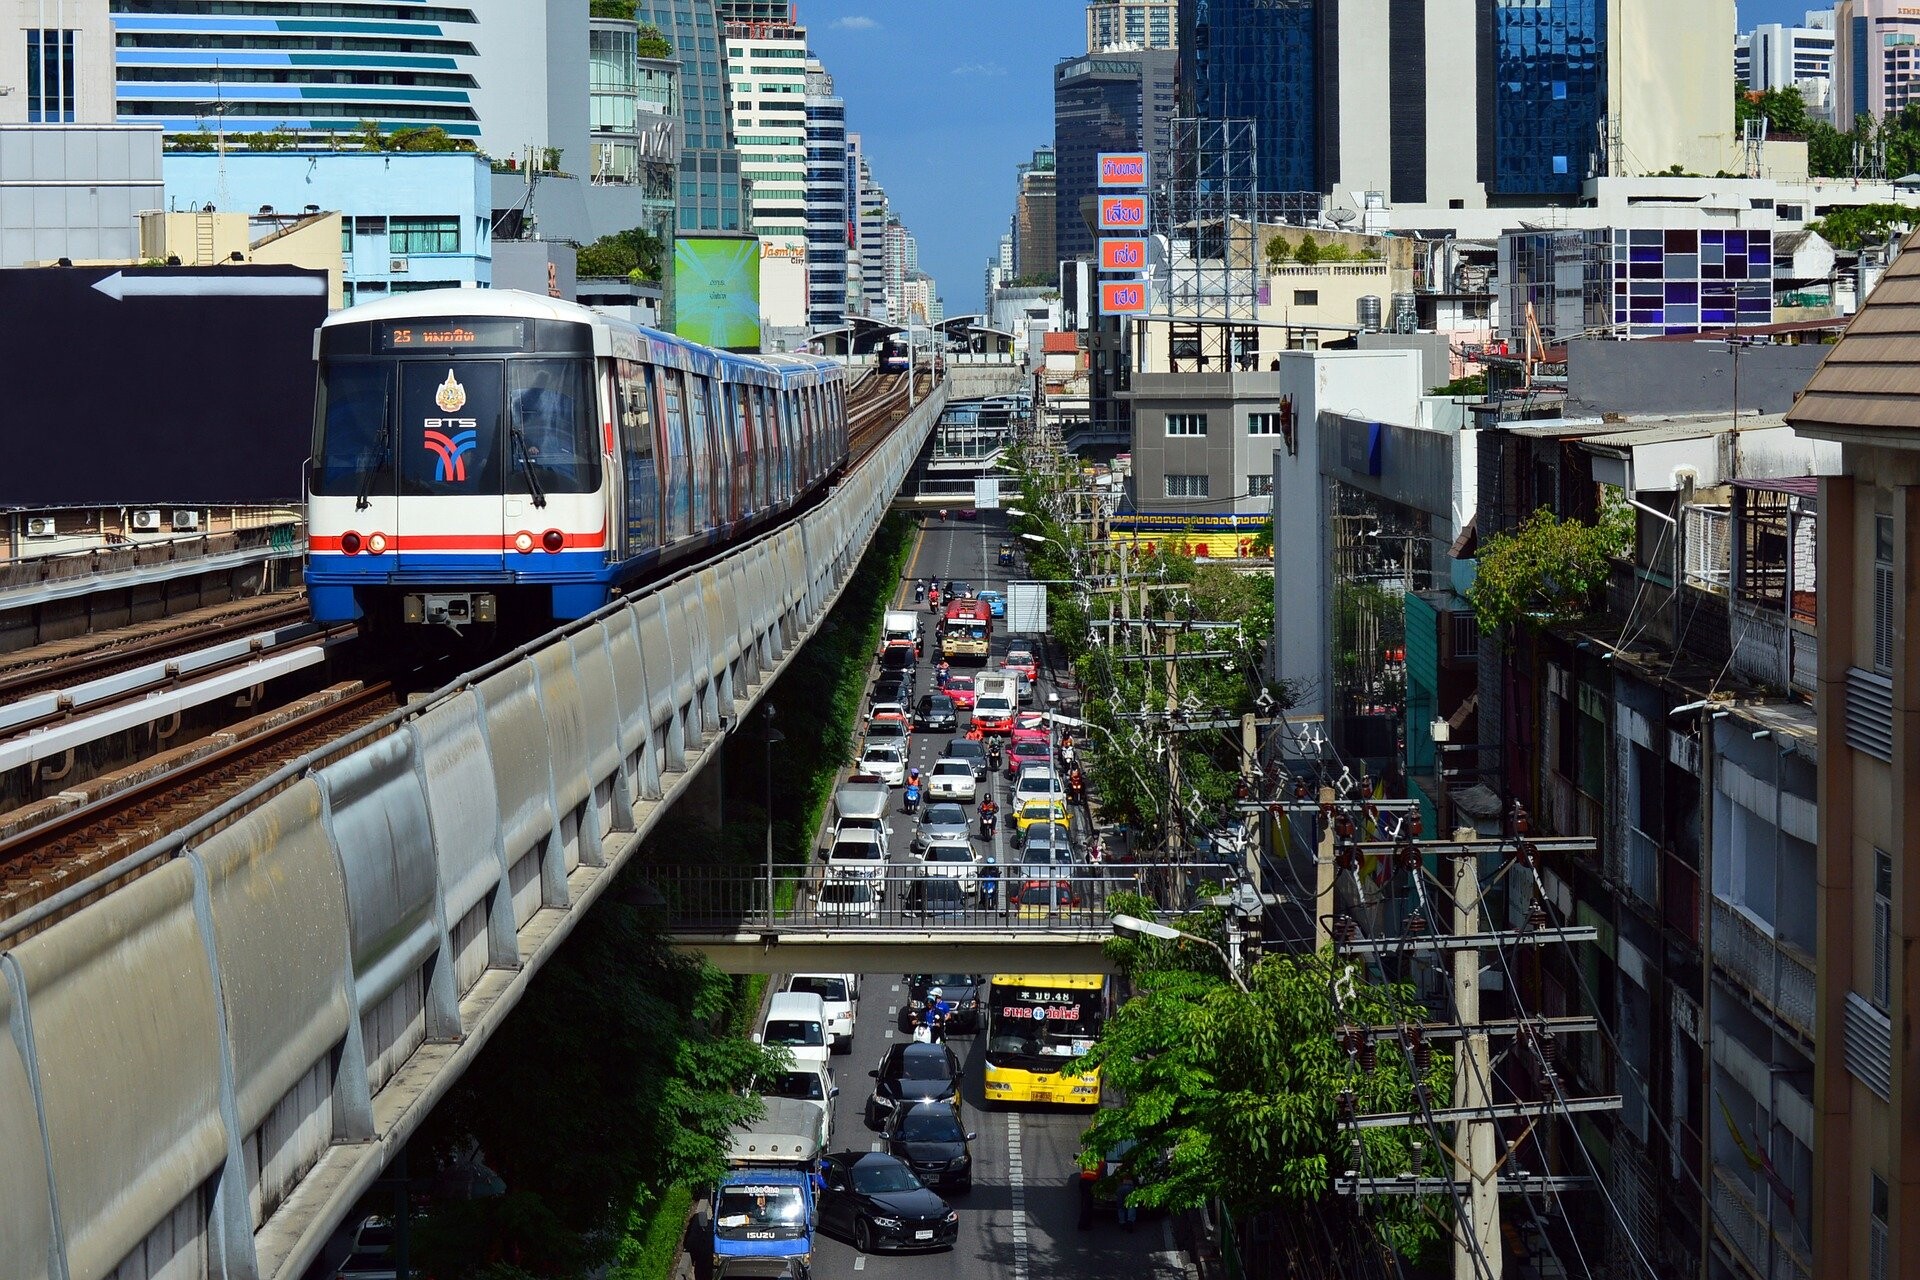 กระทรวงอว. โชว์ไทยติดอันดับ 50 ประเทศที่มีระบบนิเวศสตาร์ทอัพดีที่สุดของโลก พร้อมปลื้มกรุงเทพฯ คว้าอันดับ 71 เมืองที่เอื้อต่อการทำสตาร์ทอัพ จาก 1,000 เมืองทั่วโลก